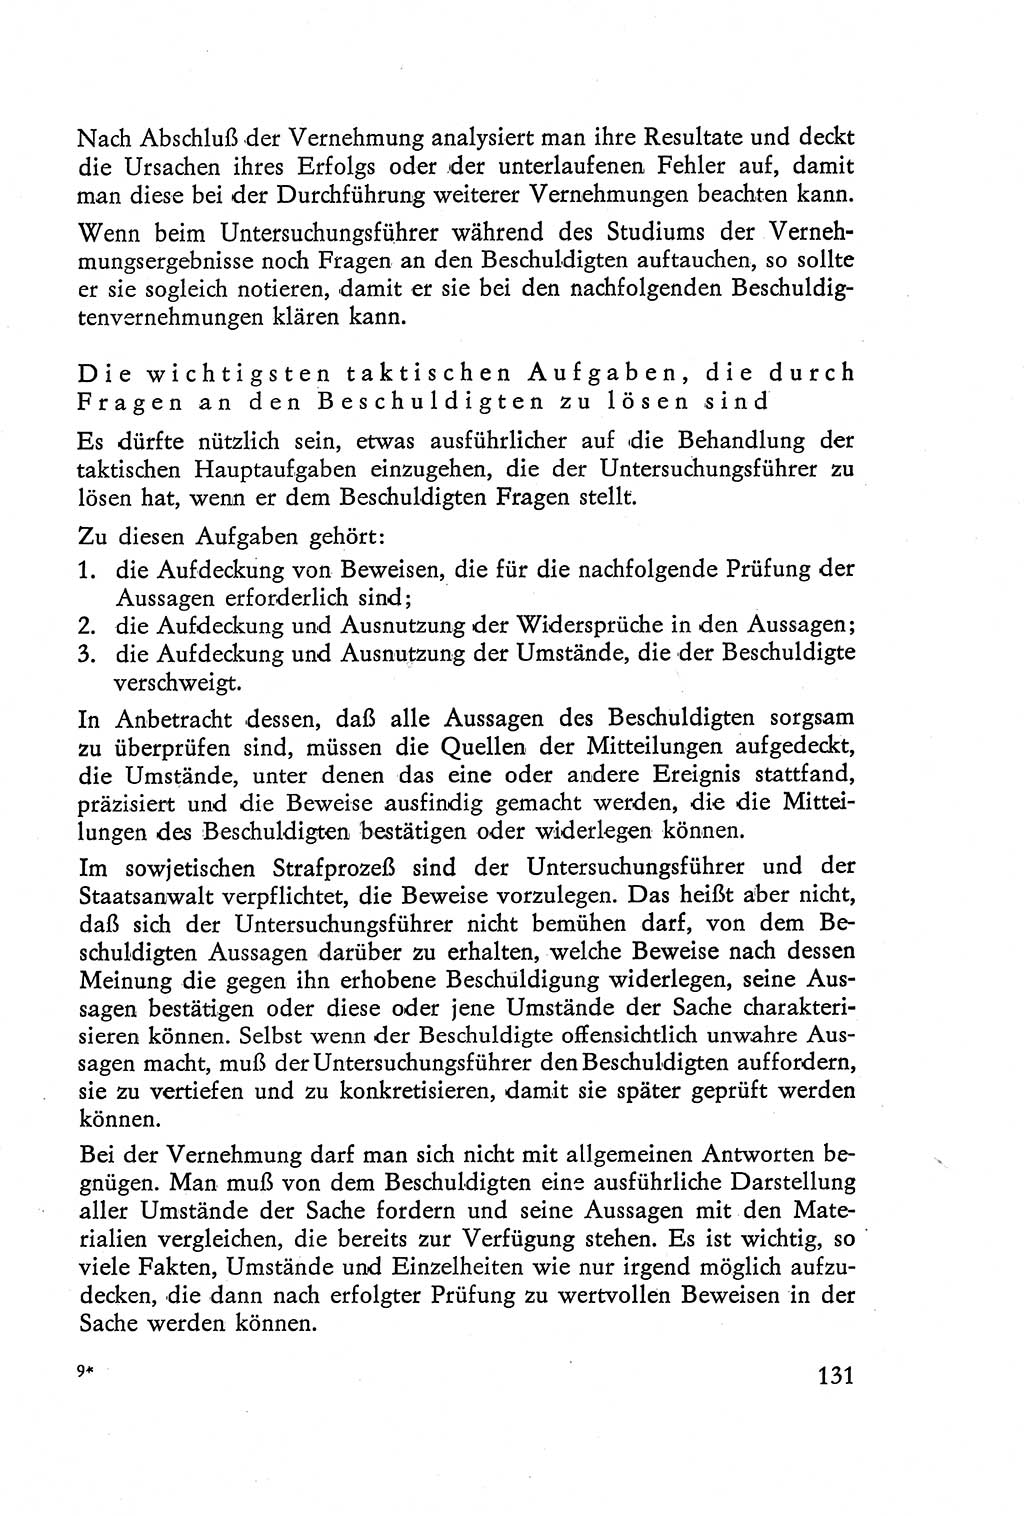 Die Vernehmung [Deutsche Demokratische Republik (DDR)] 1960, Seite 131 (Vern. DDR 1960, S. 131)